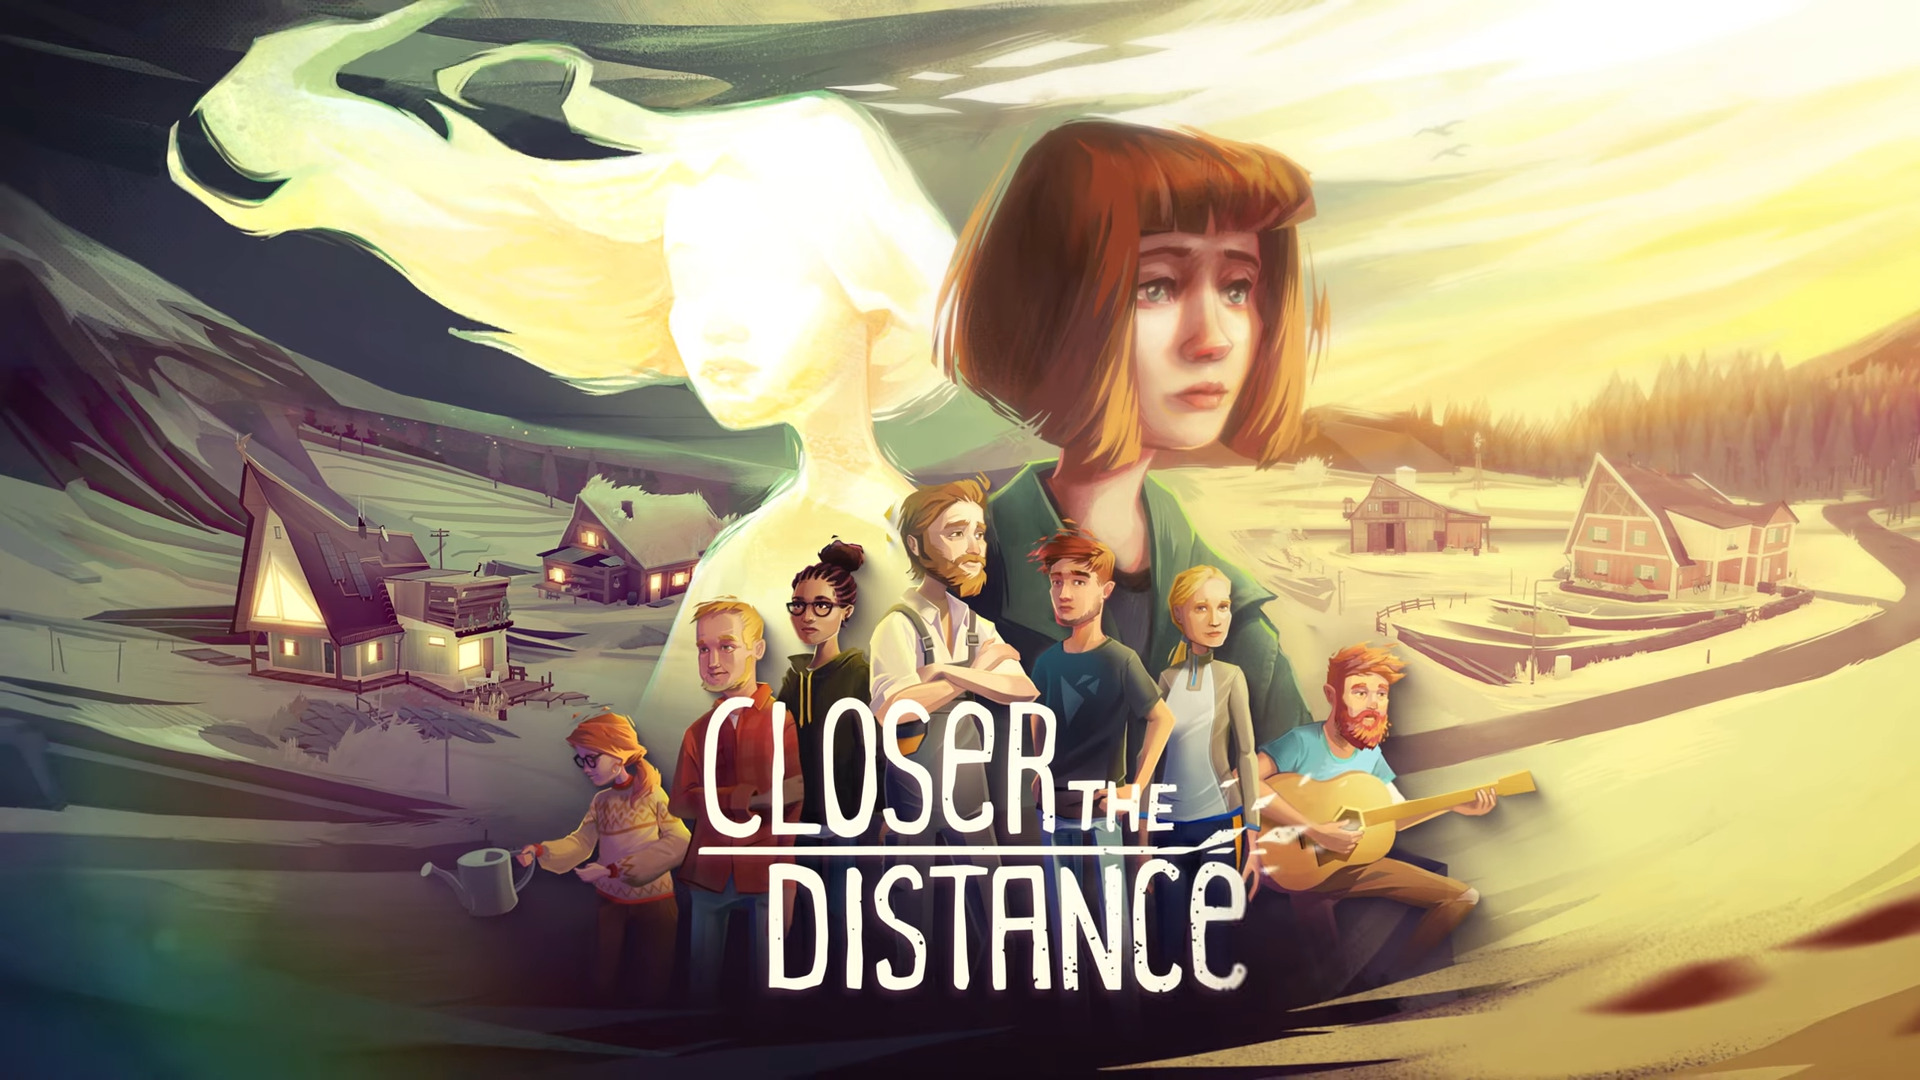 معرفی بازی Closer the Distance با تریلری جدید